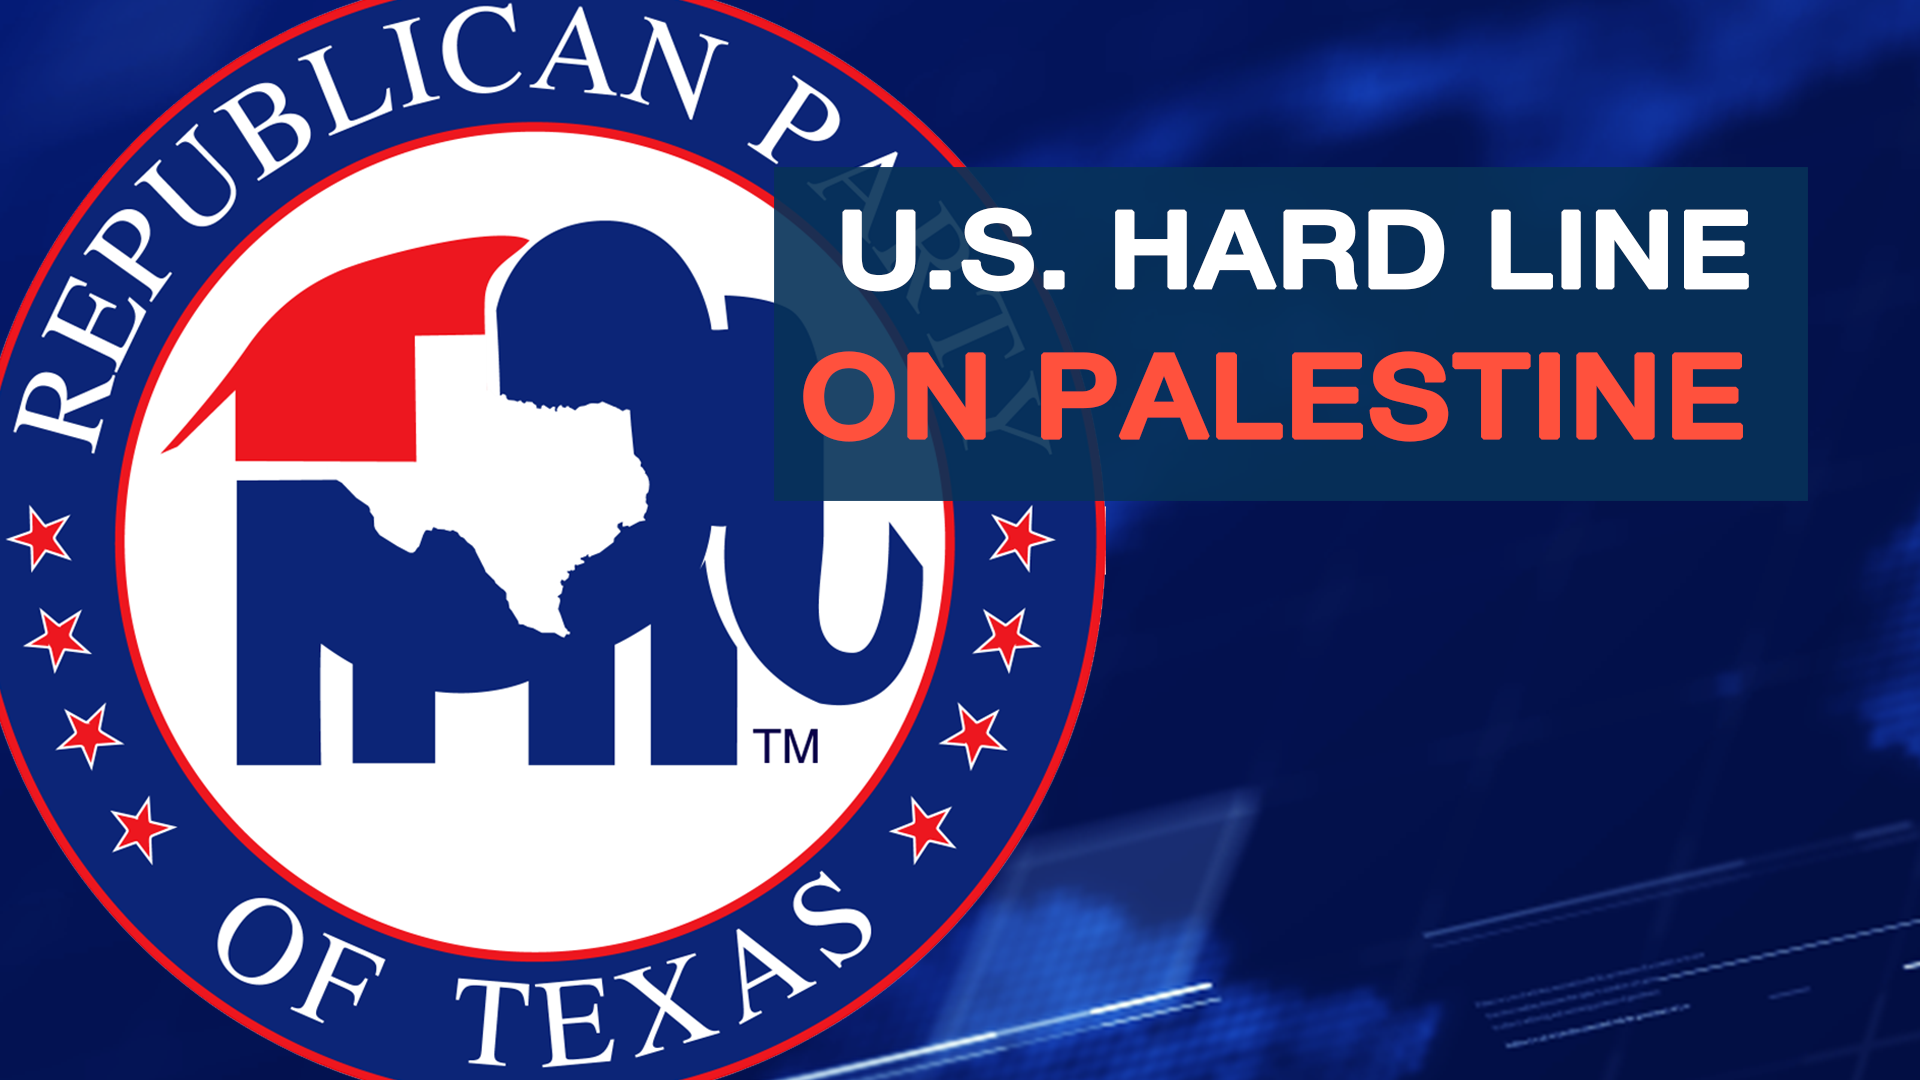 U.S. Republicans against Palestinian Territory